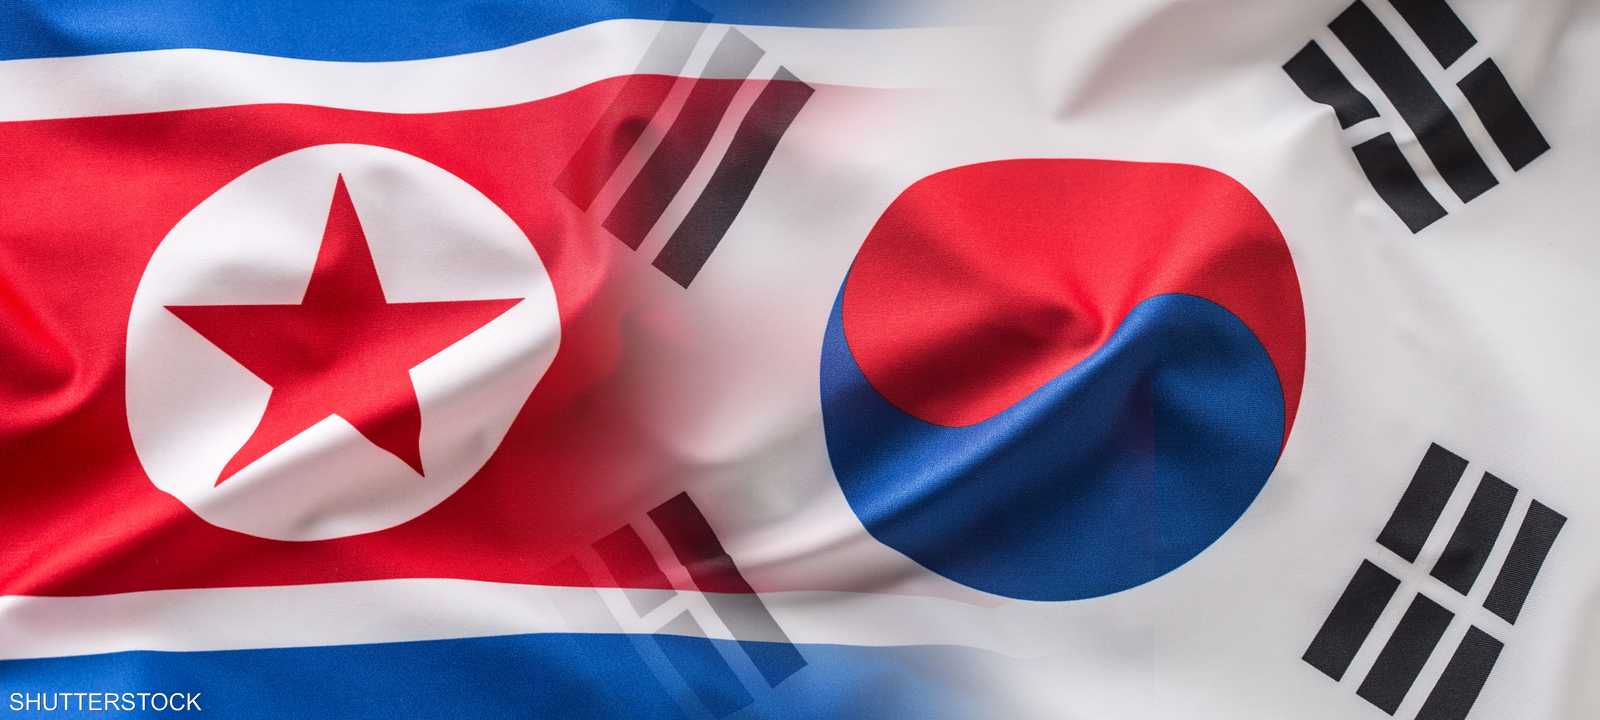 تدهور العلاقات بين كوريا الجنوبية وجارتها الشمالية